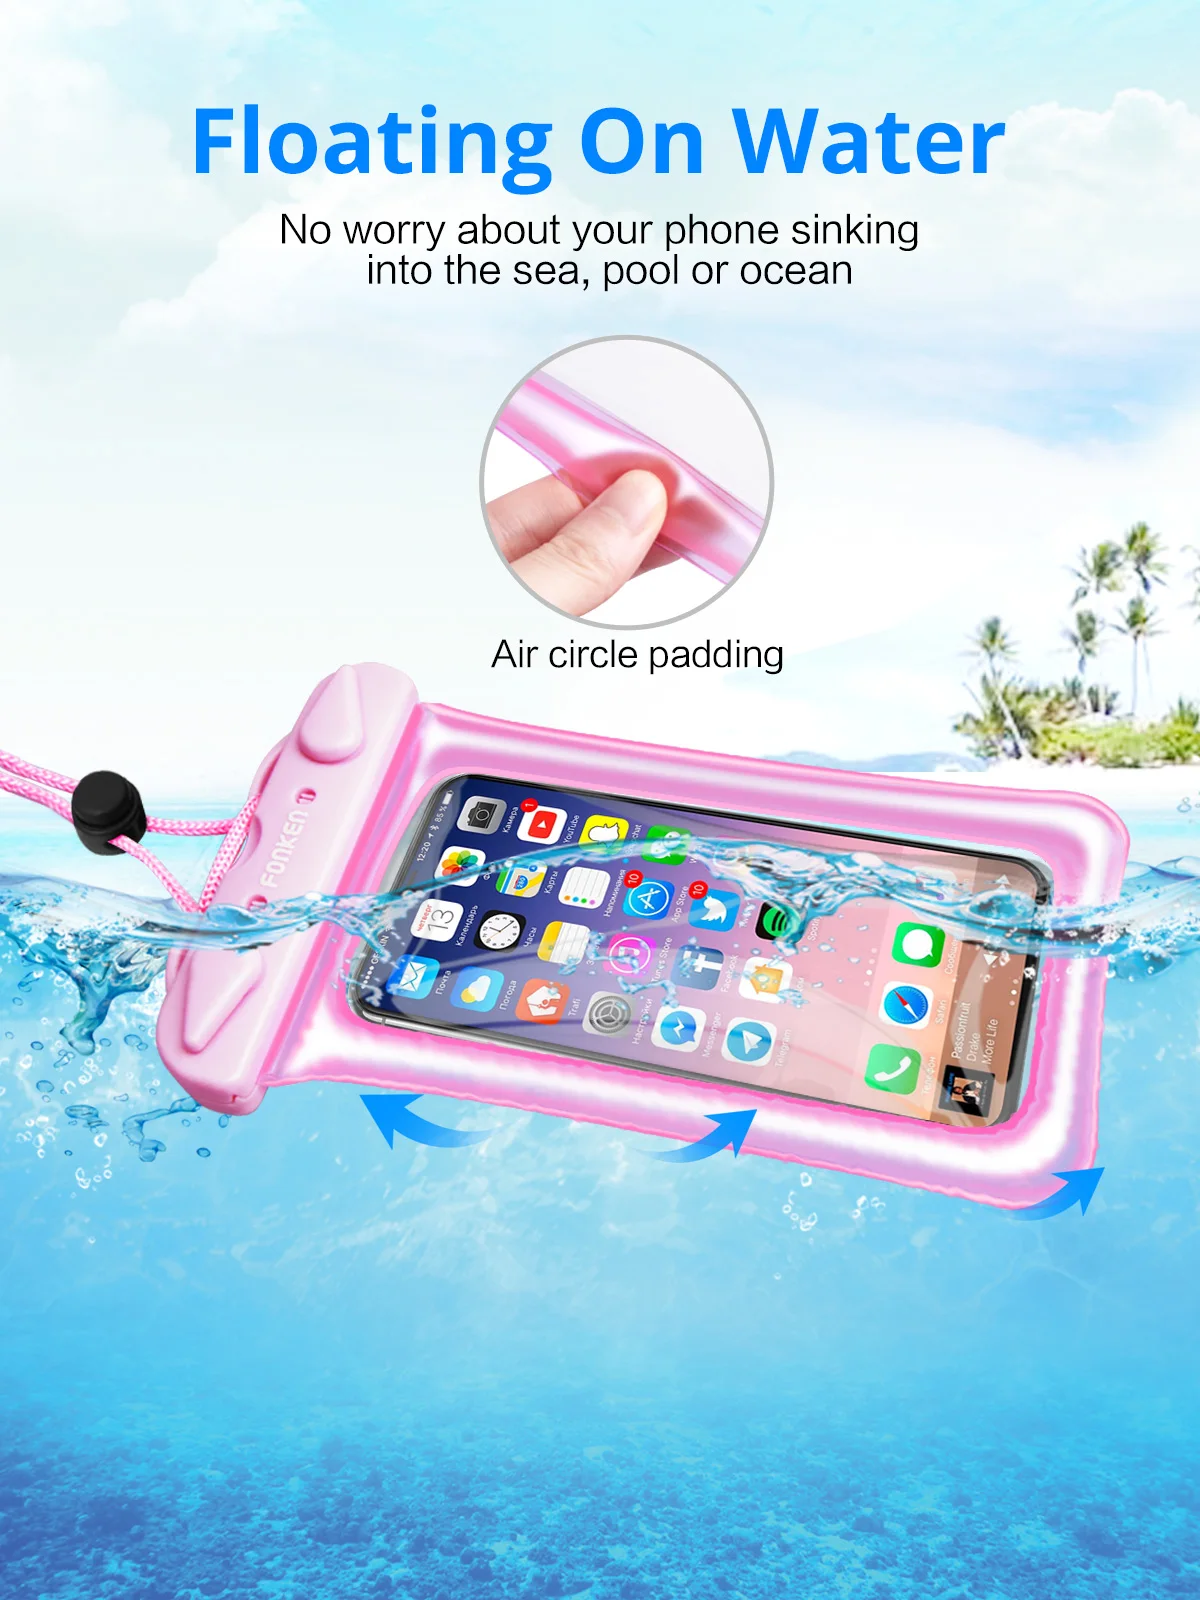 FONKEN IPX8 водонепроницаемый чехол для телефона смартфон сухая Сумка Подушка безопасности поплавок чехол для хранения подводный сенсорный Android мобильный телефон Дайвинг сумка